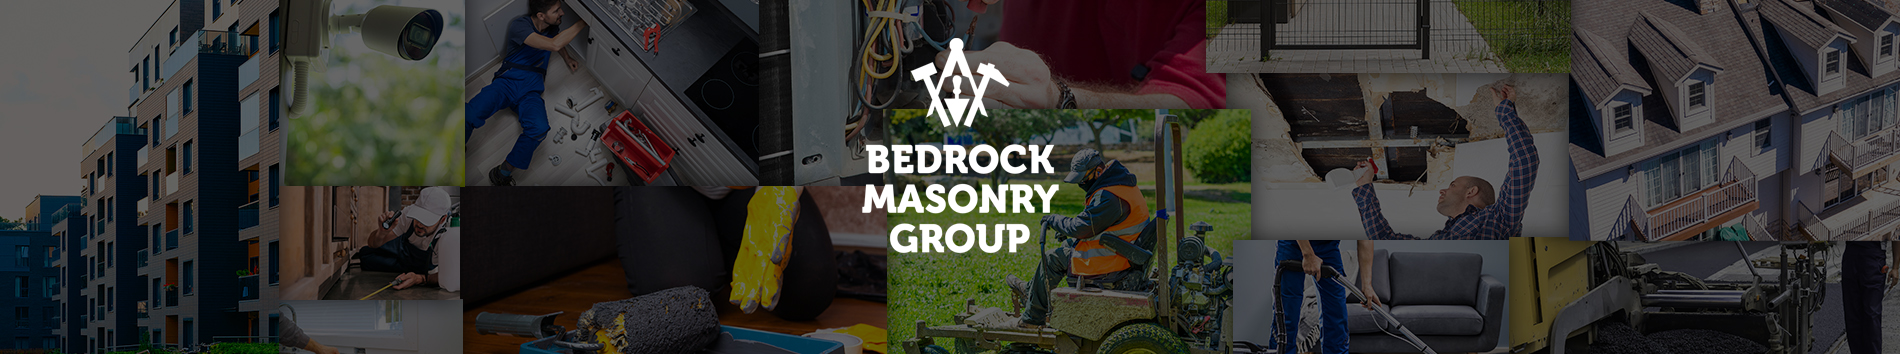 Bedrock Masonry Group